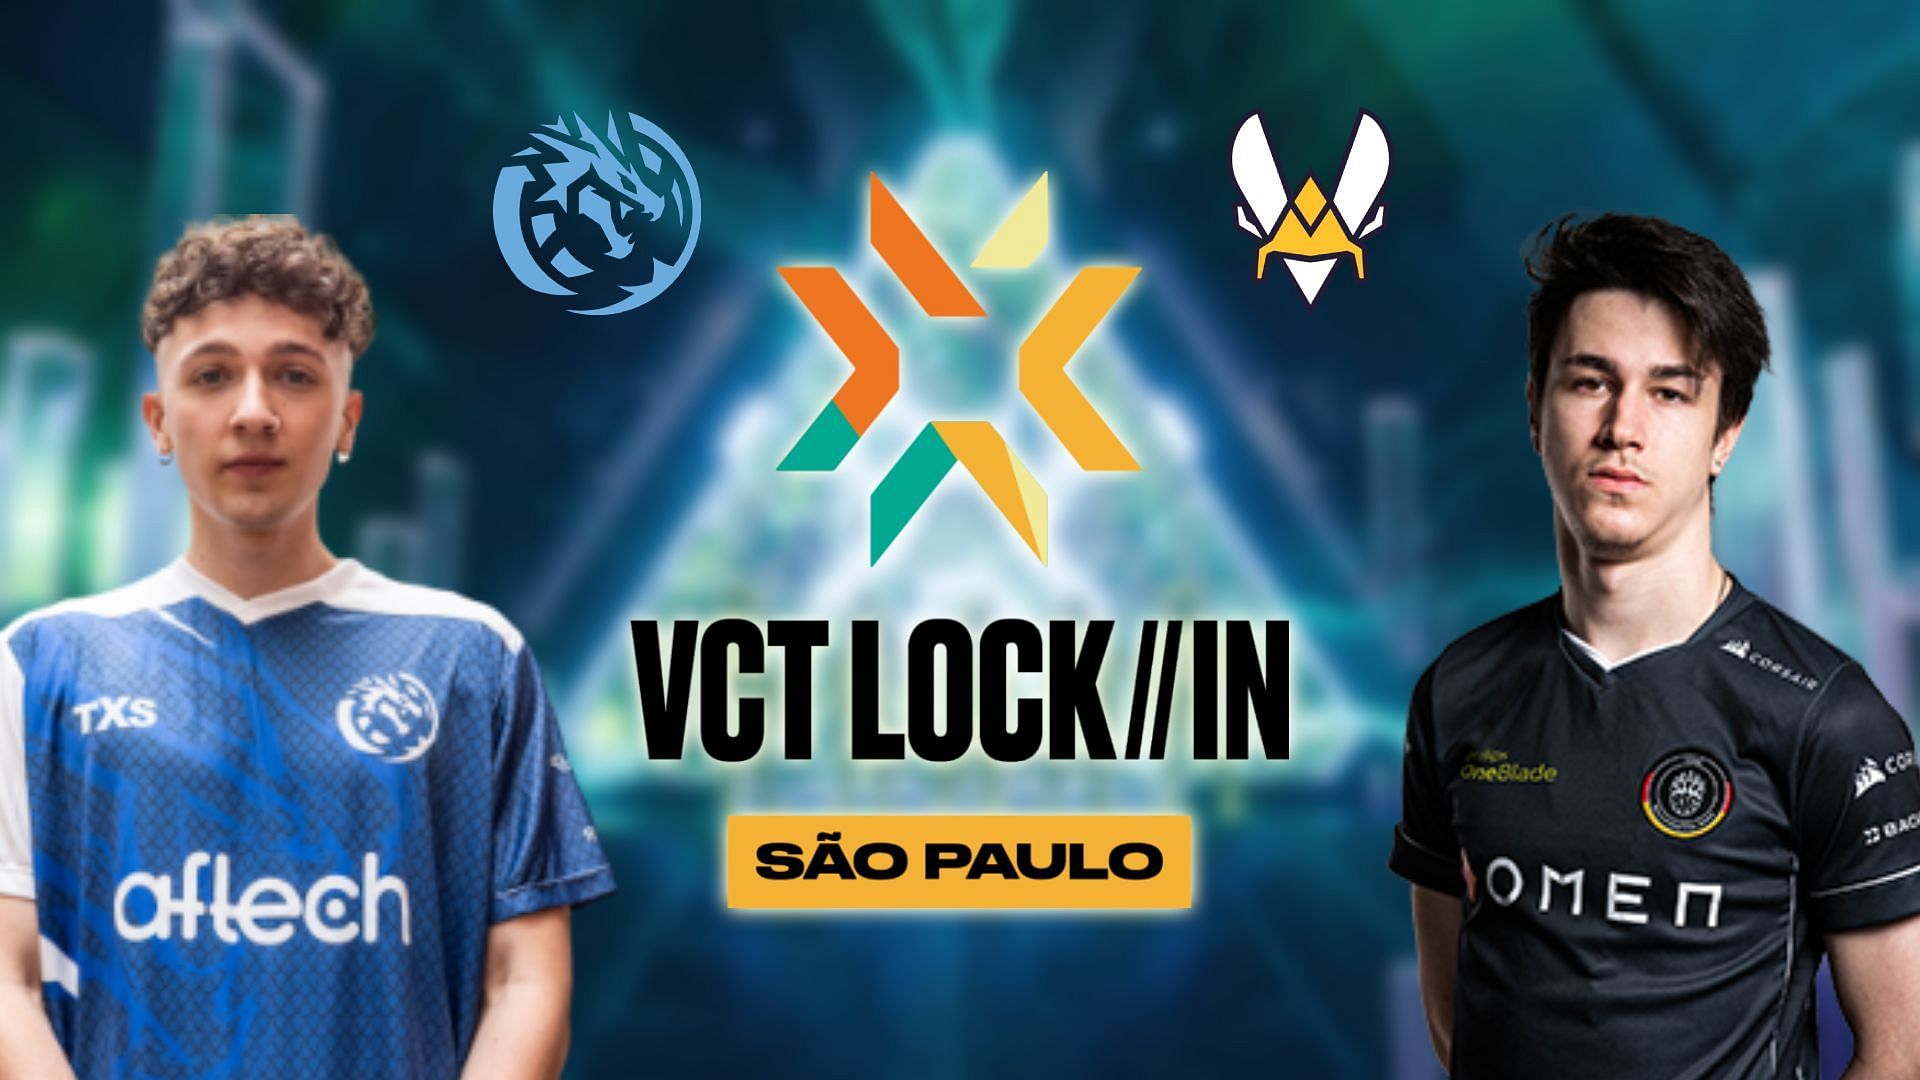 Leviat&aacute;n vs Team Vitality in VCT LOCK//IN 2023 (Image via Sportskeeda)